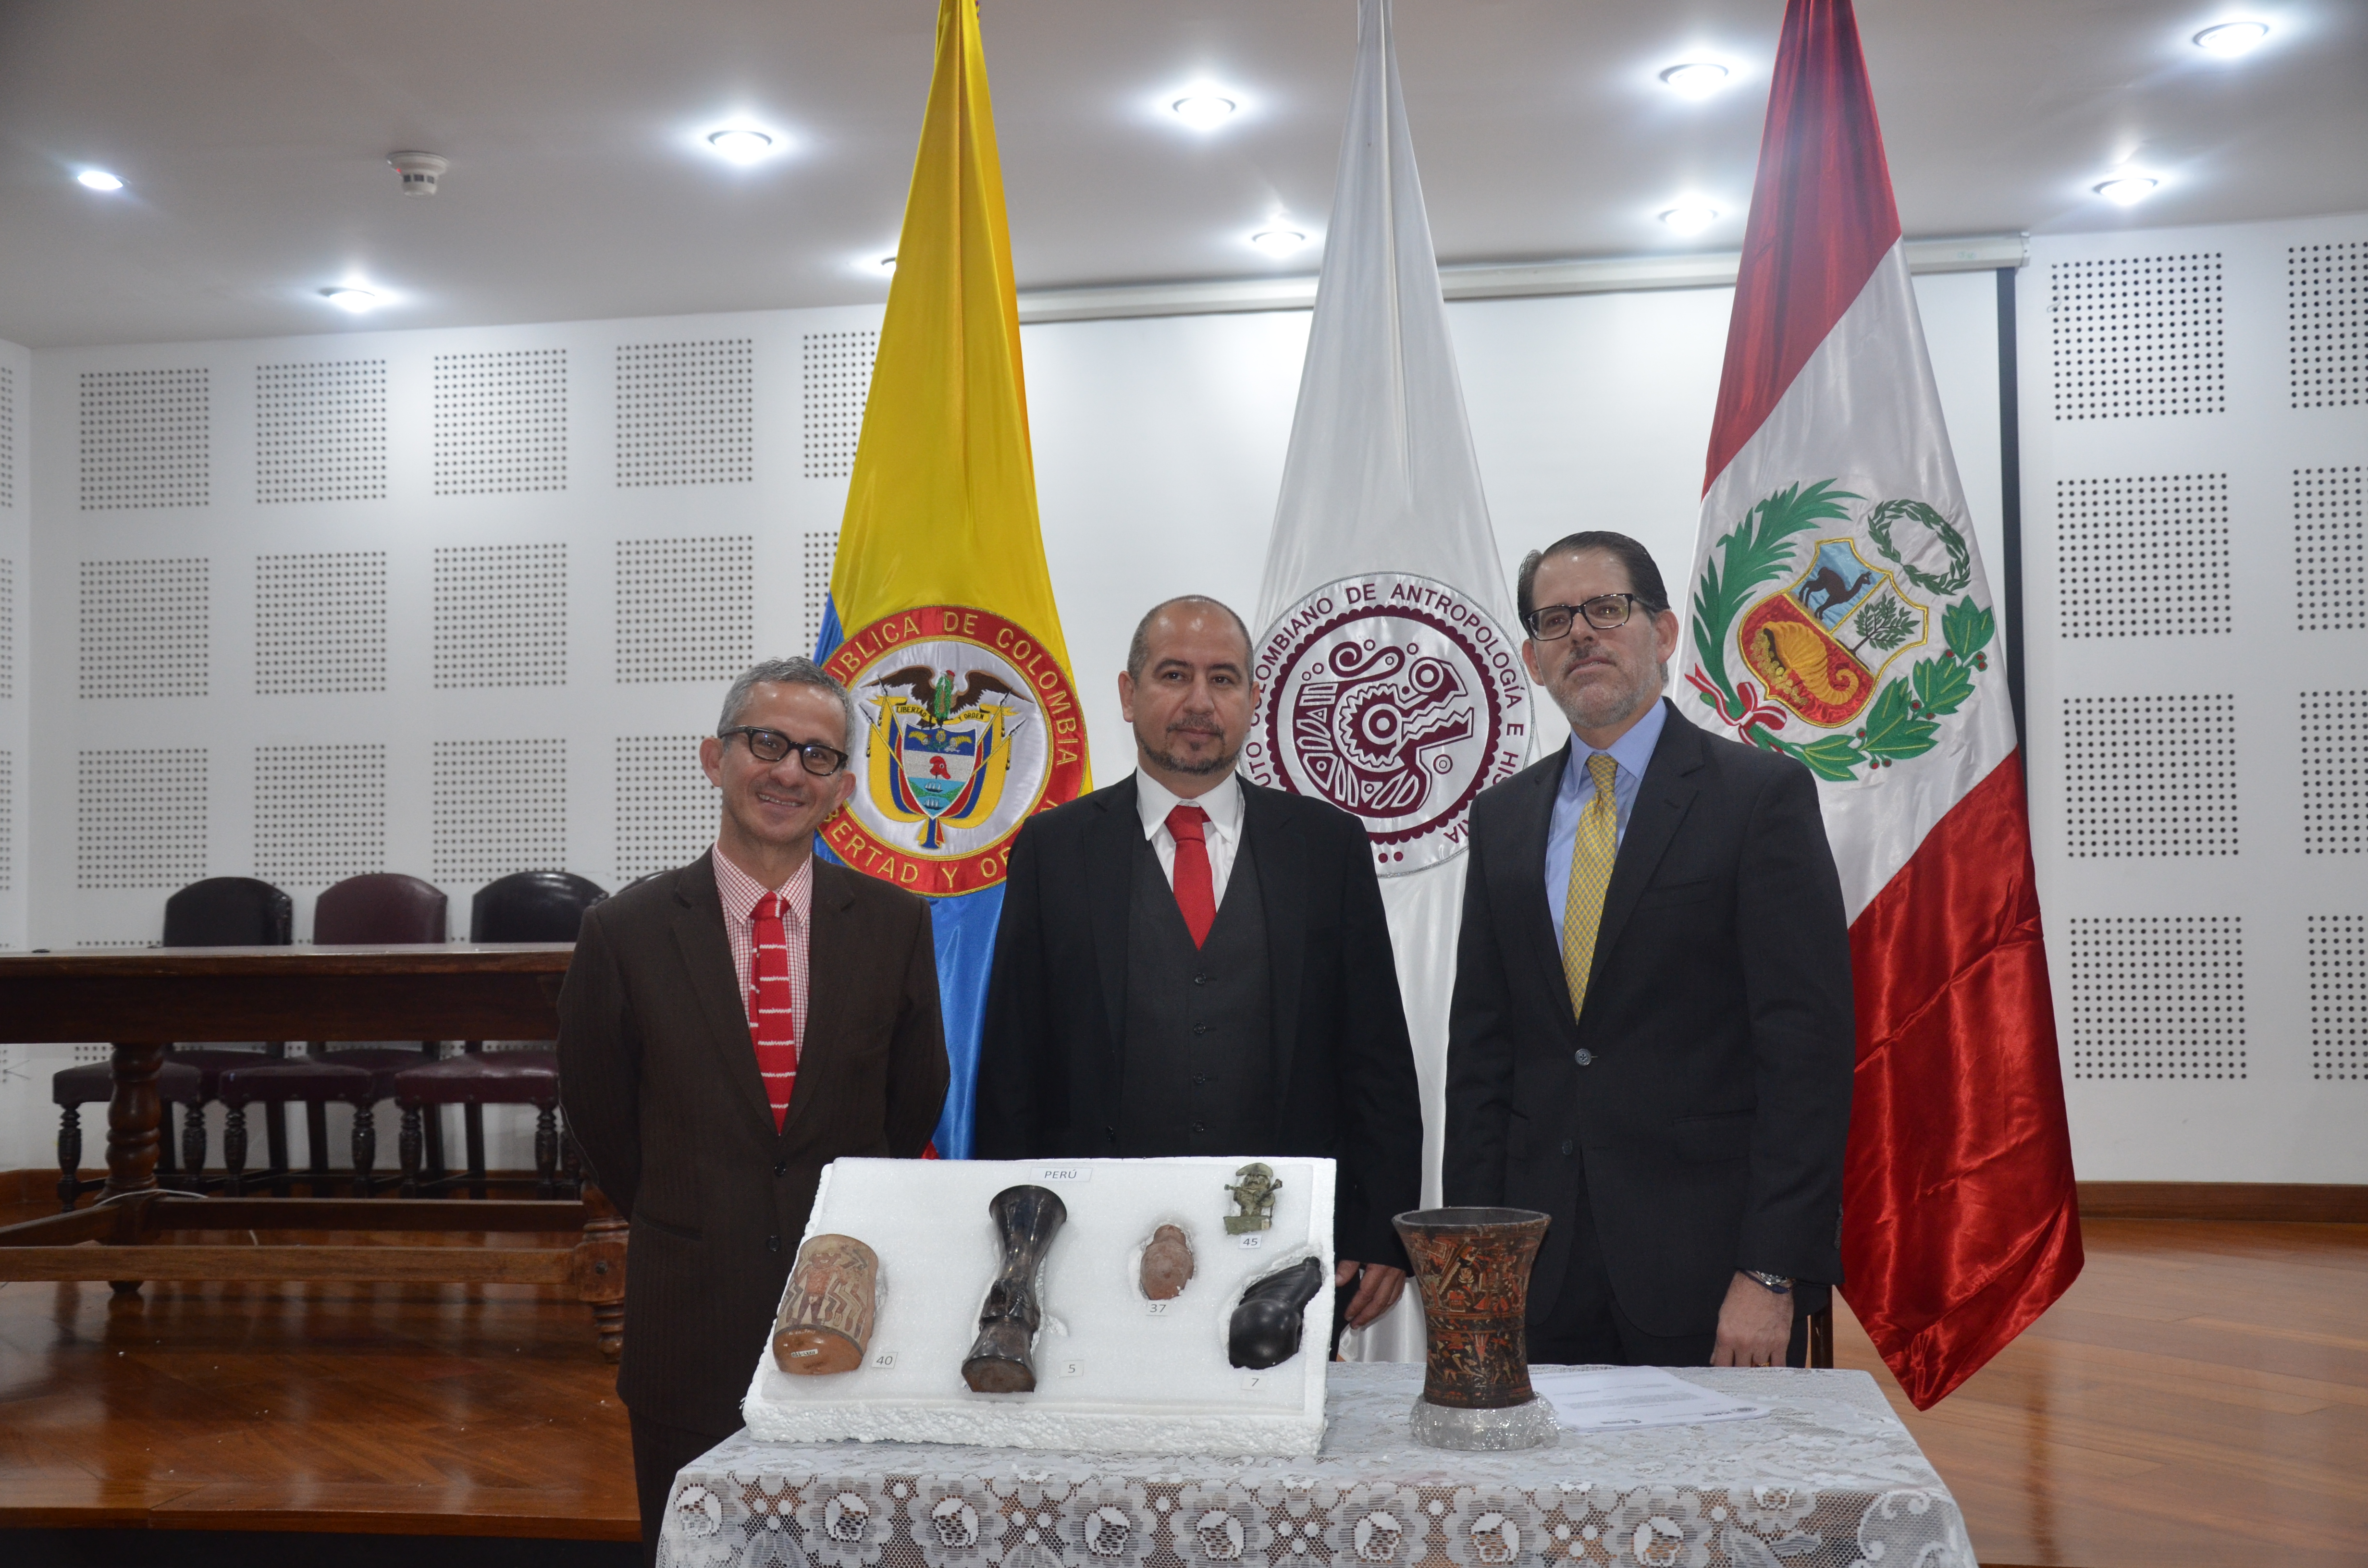 De izquierda a derecha: Luis Armando Soto Boutin, Director de Asuntos Culturales del Ministerio de Relaciones; Ernesto Montenegro Pérez, Director del ICANH e Ignacio Higueras Hare, Embajador del Perú en Colombia.